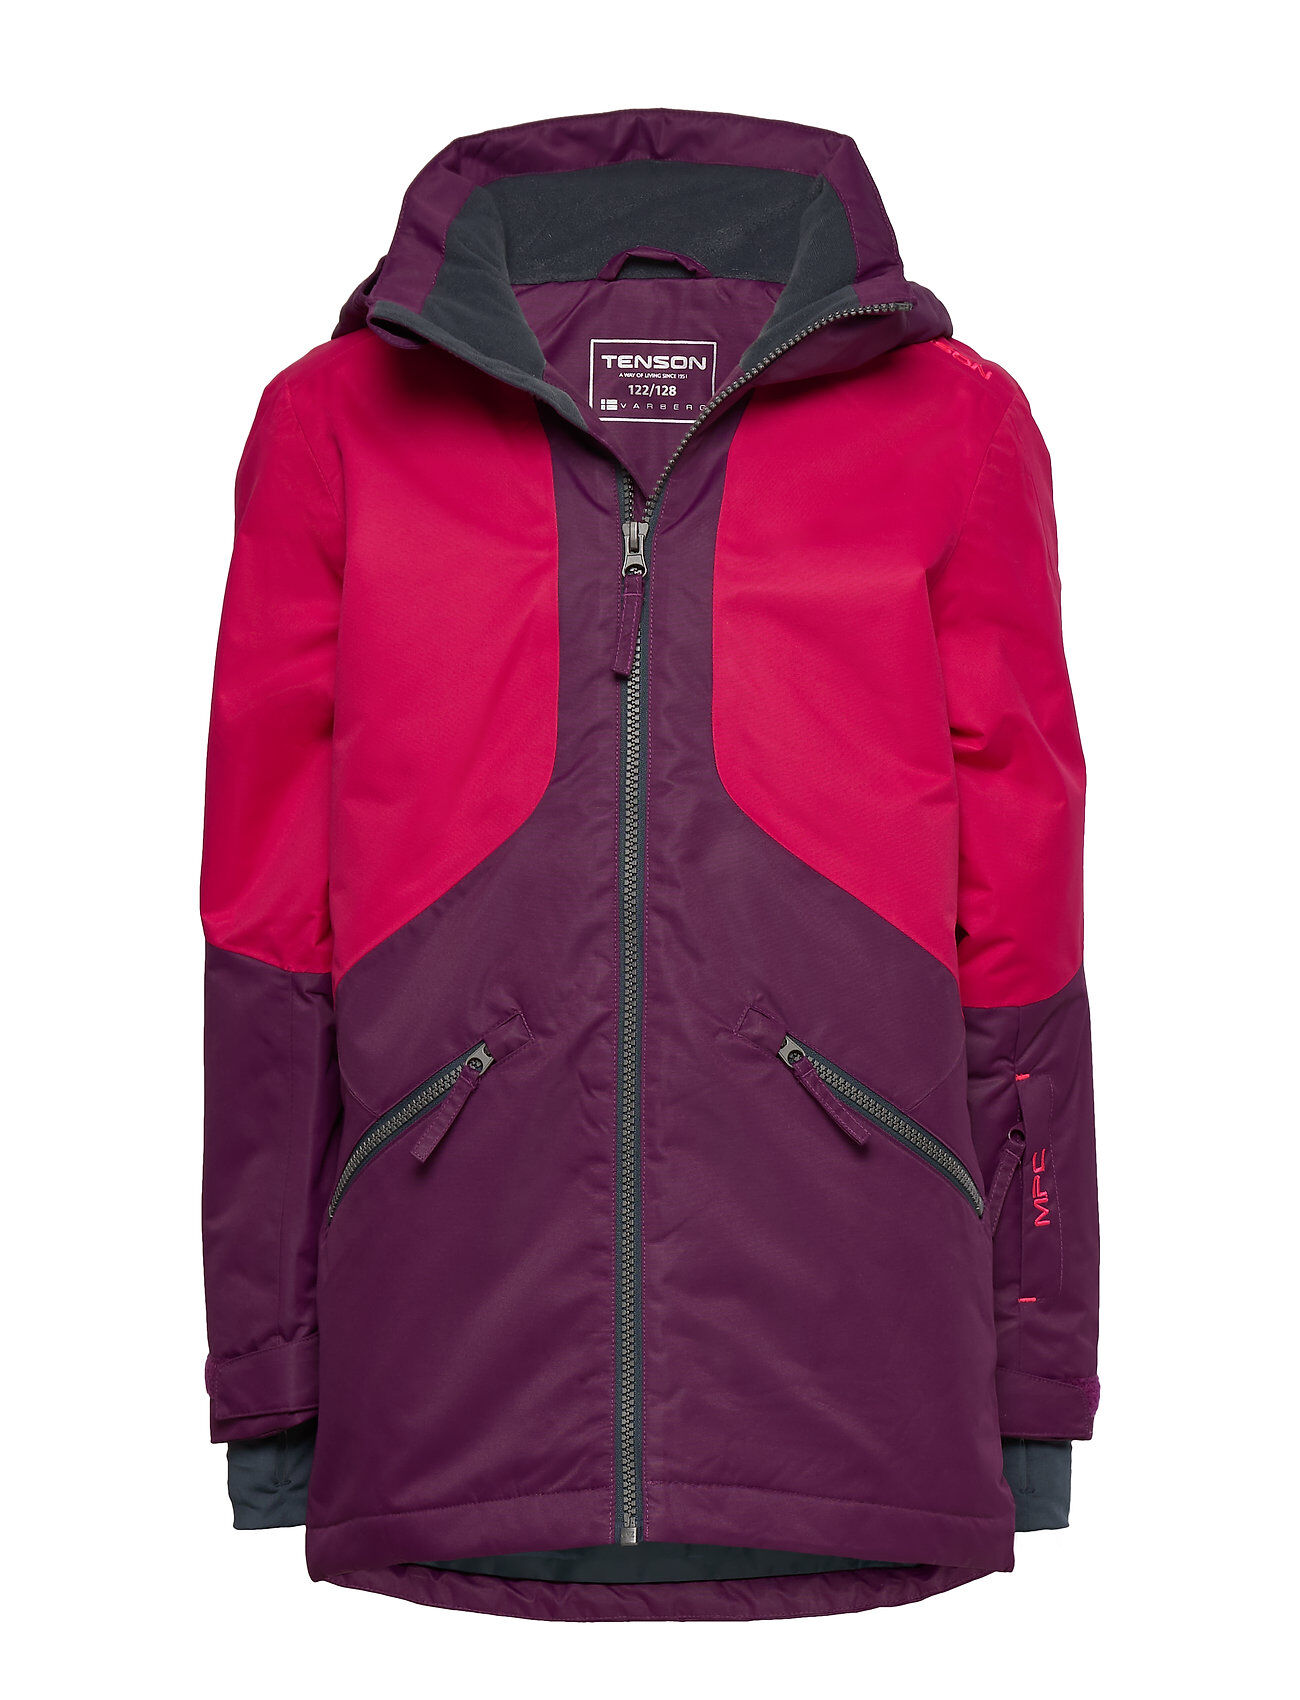 Tenson Mochi Outerwear Snow/ski Clothing Snow/ski Jacket Rosa Tenson